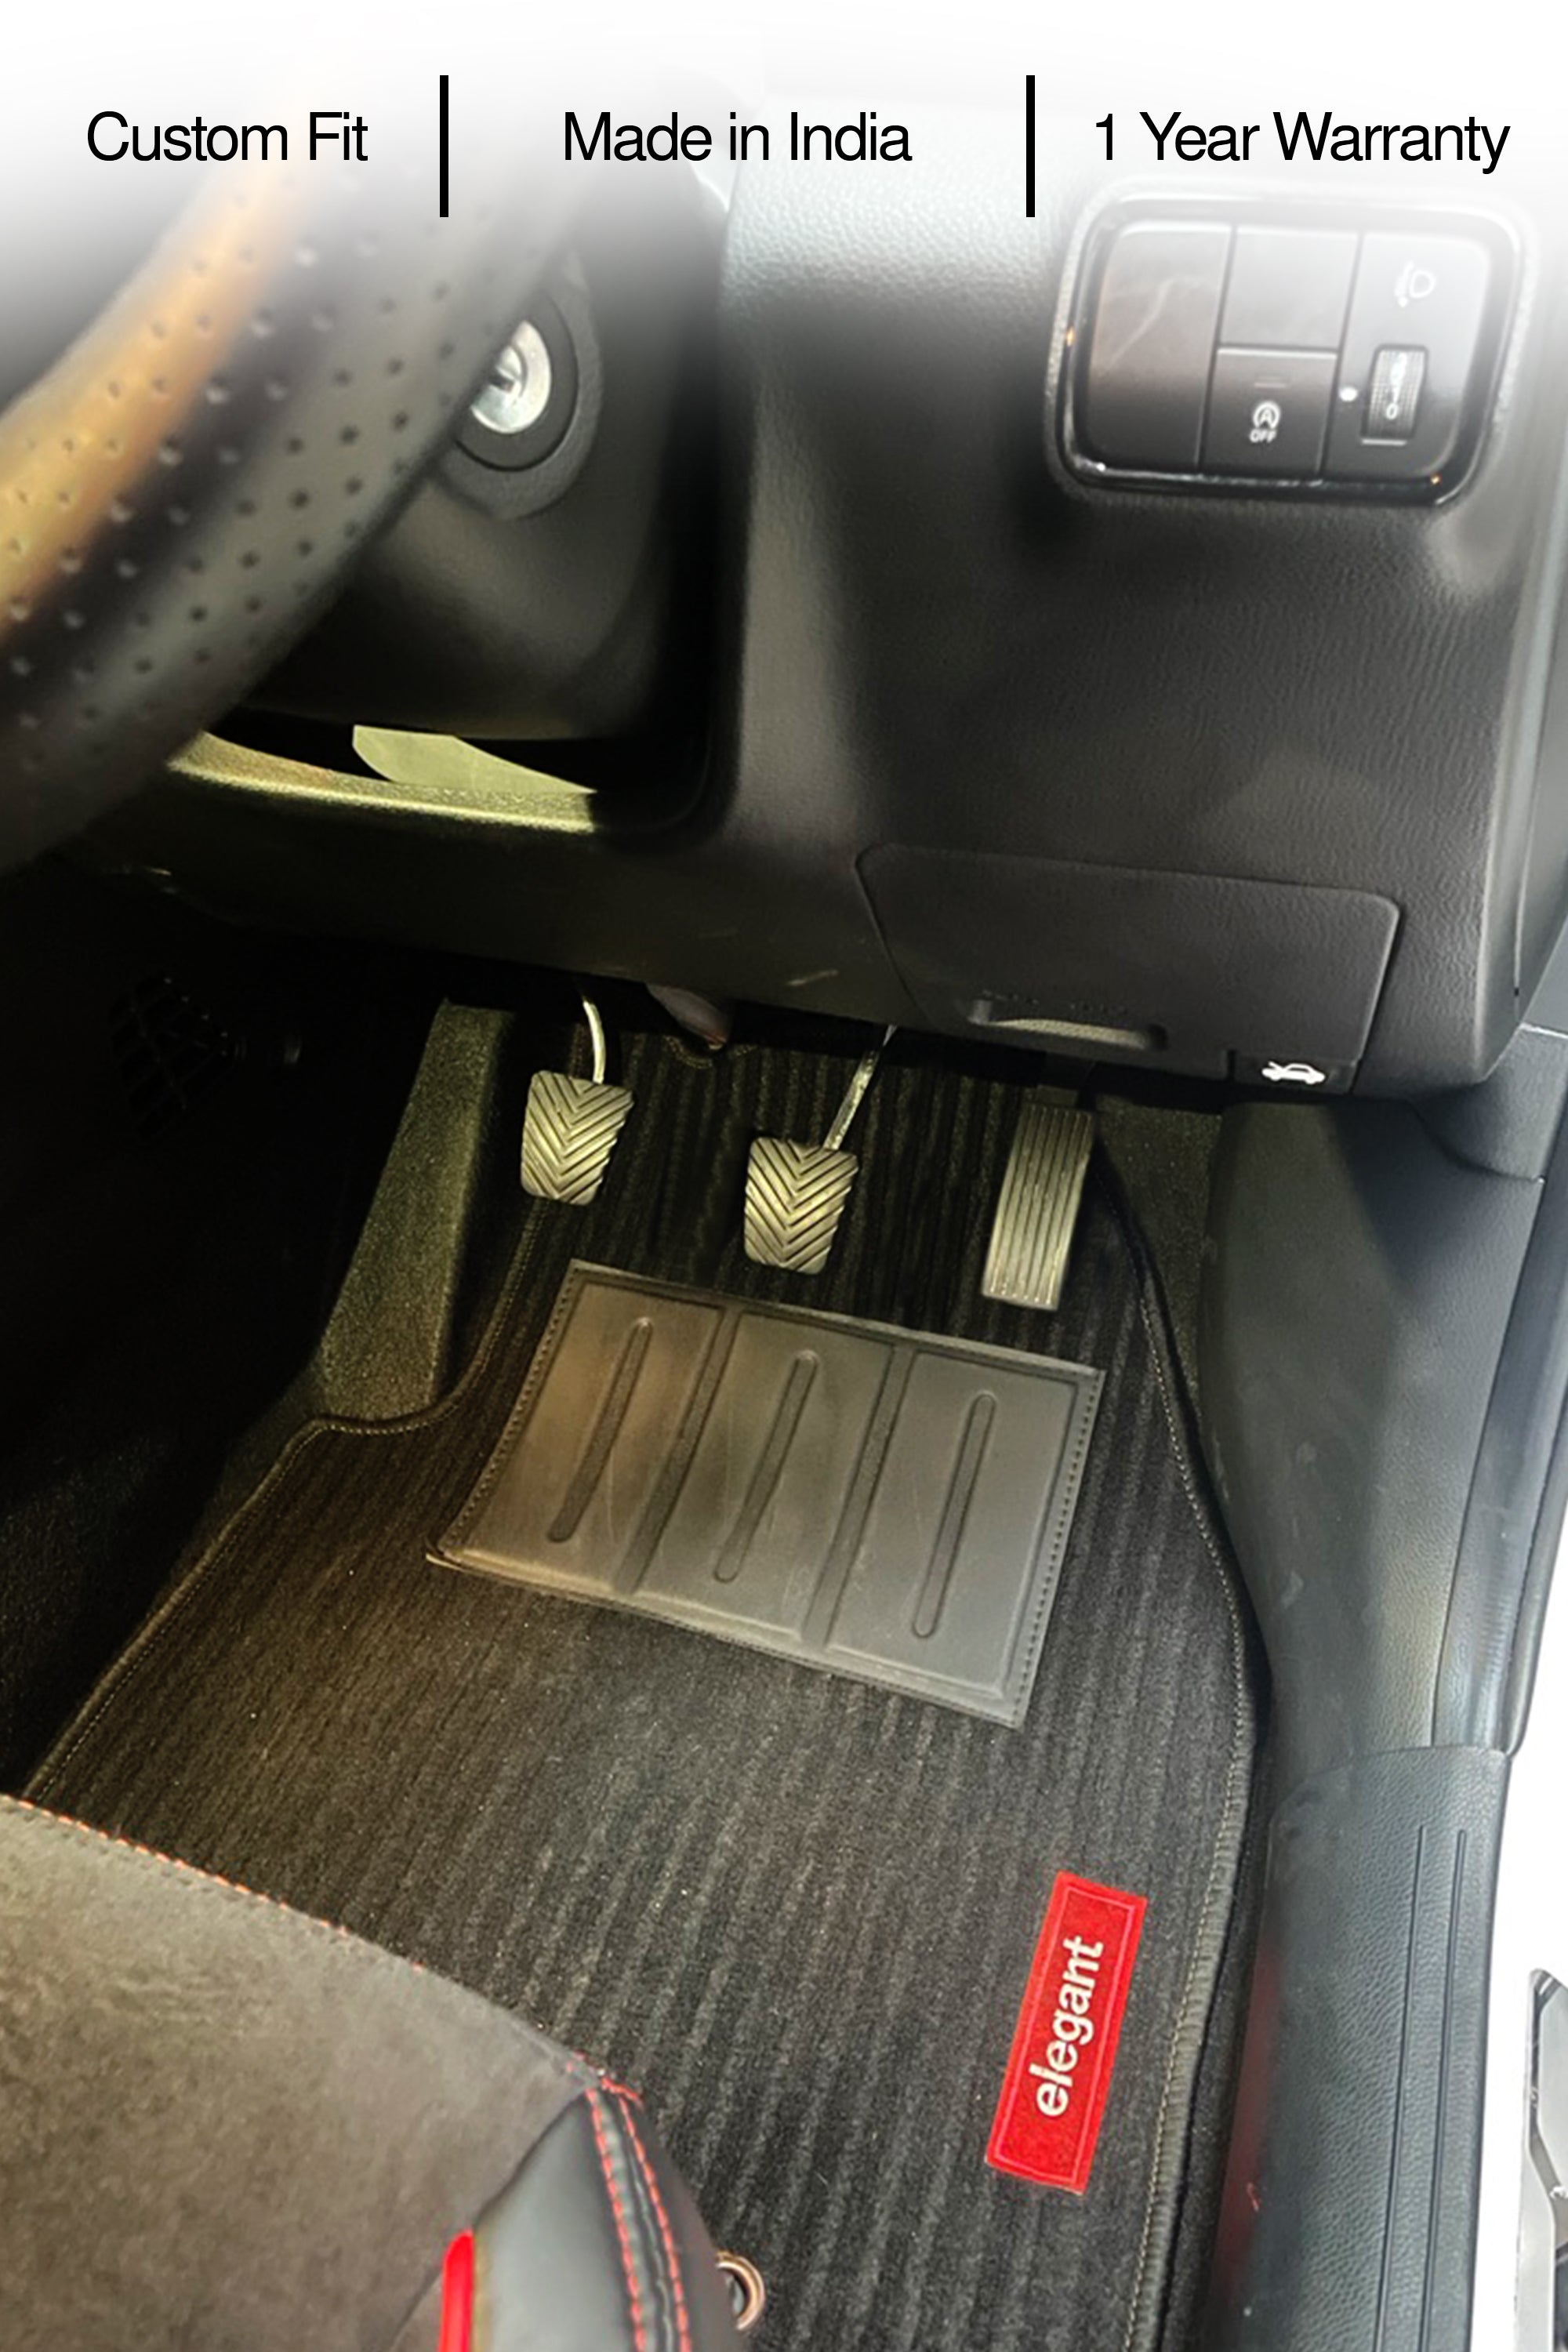 7D Car Floor Mats For Maruti Dzire – Elegant Auto Retail